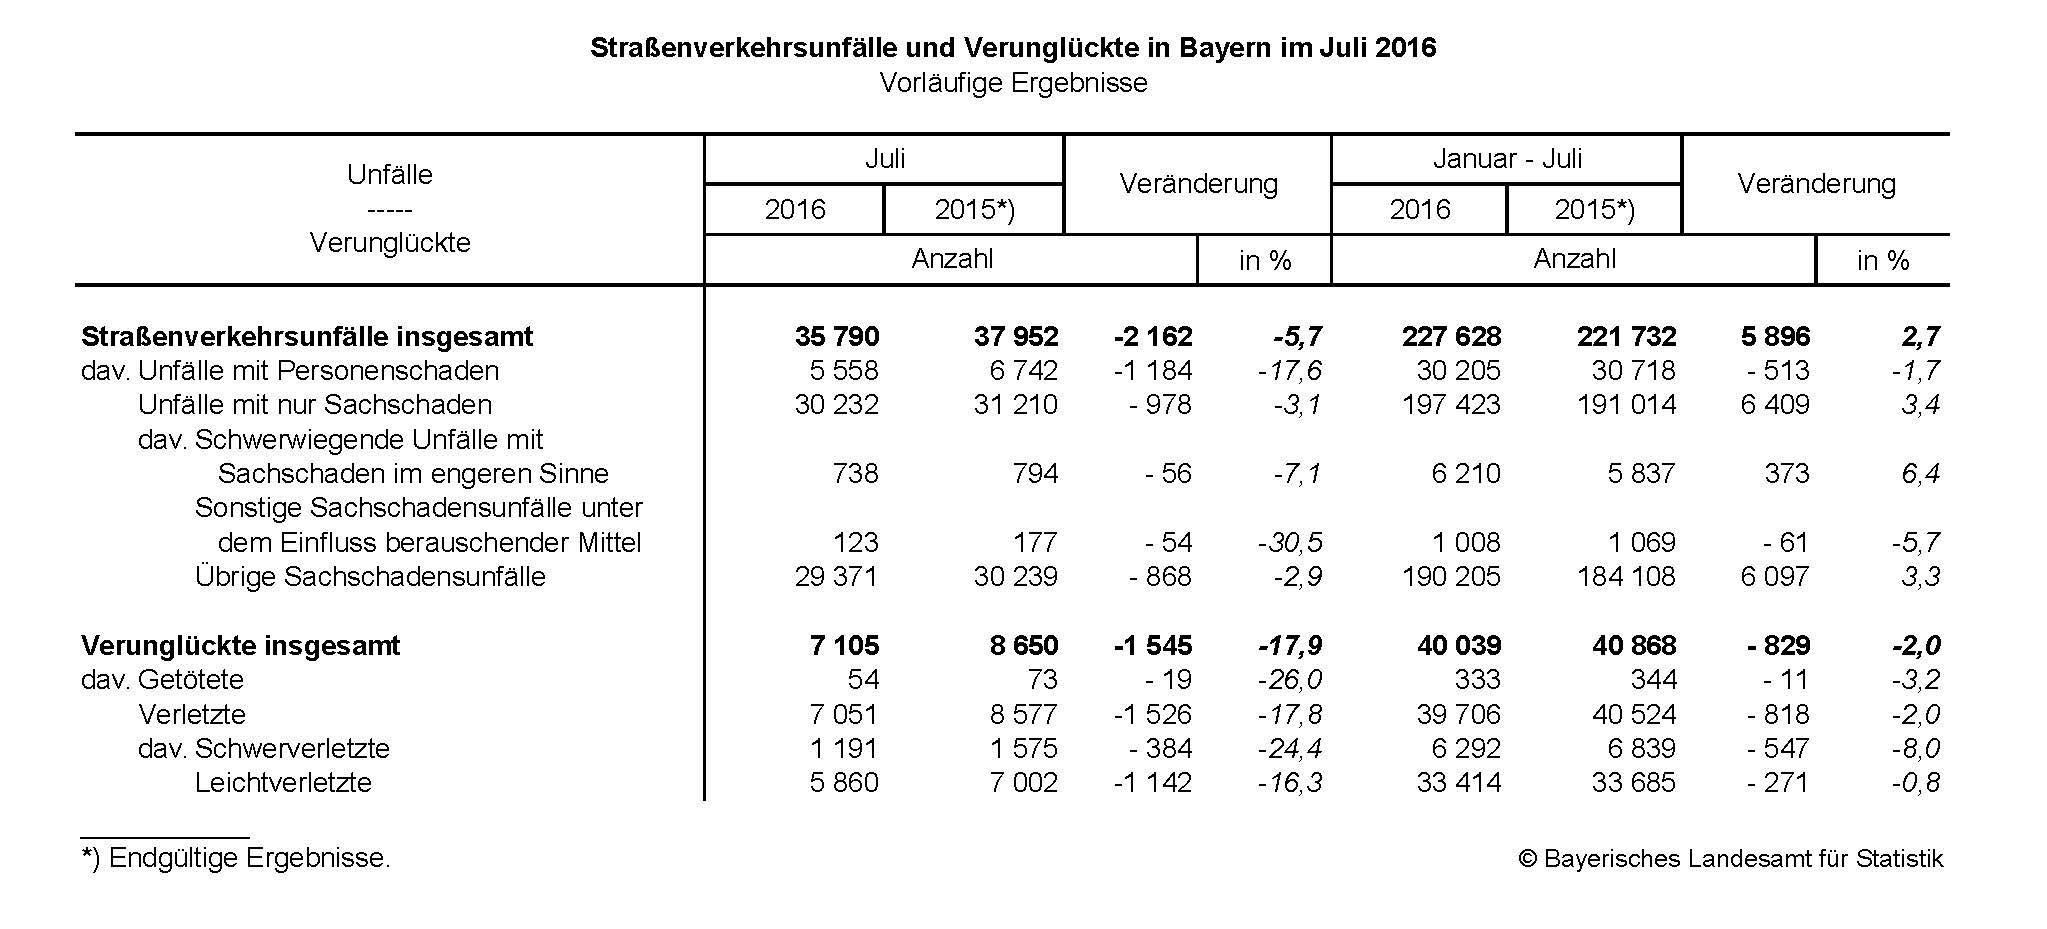   Straßenverkehrsunfälle und Verunglückte in Bayern im Juli 2016